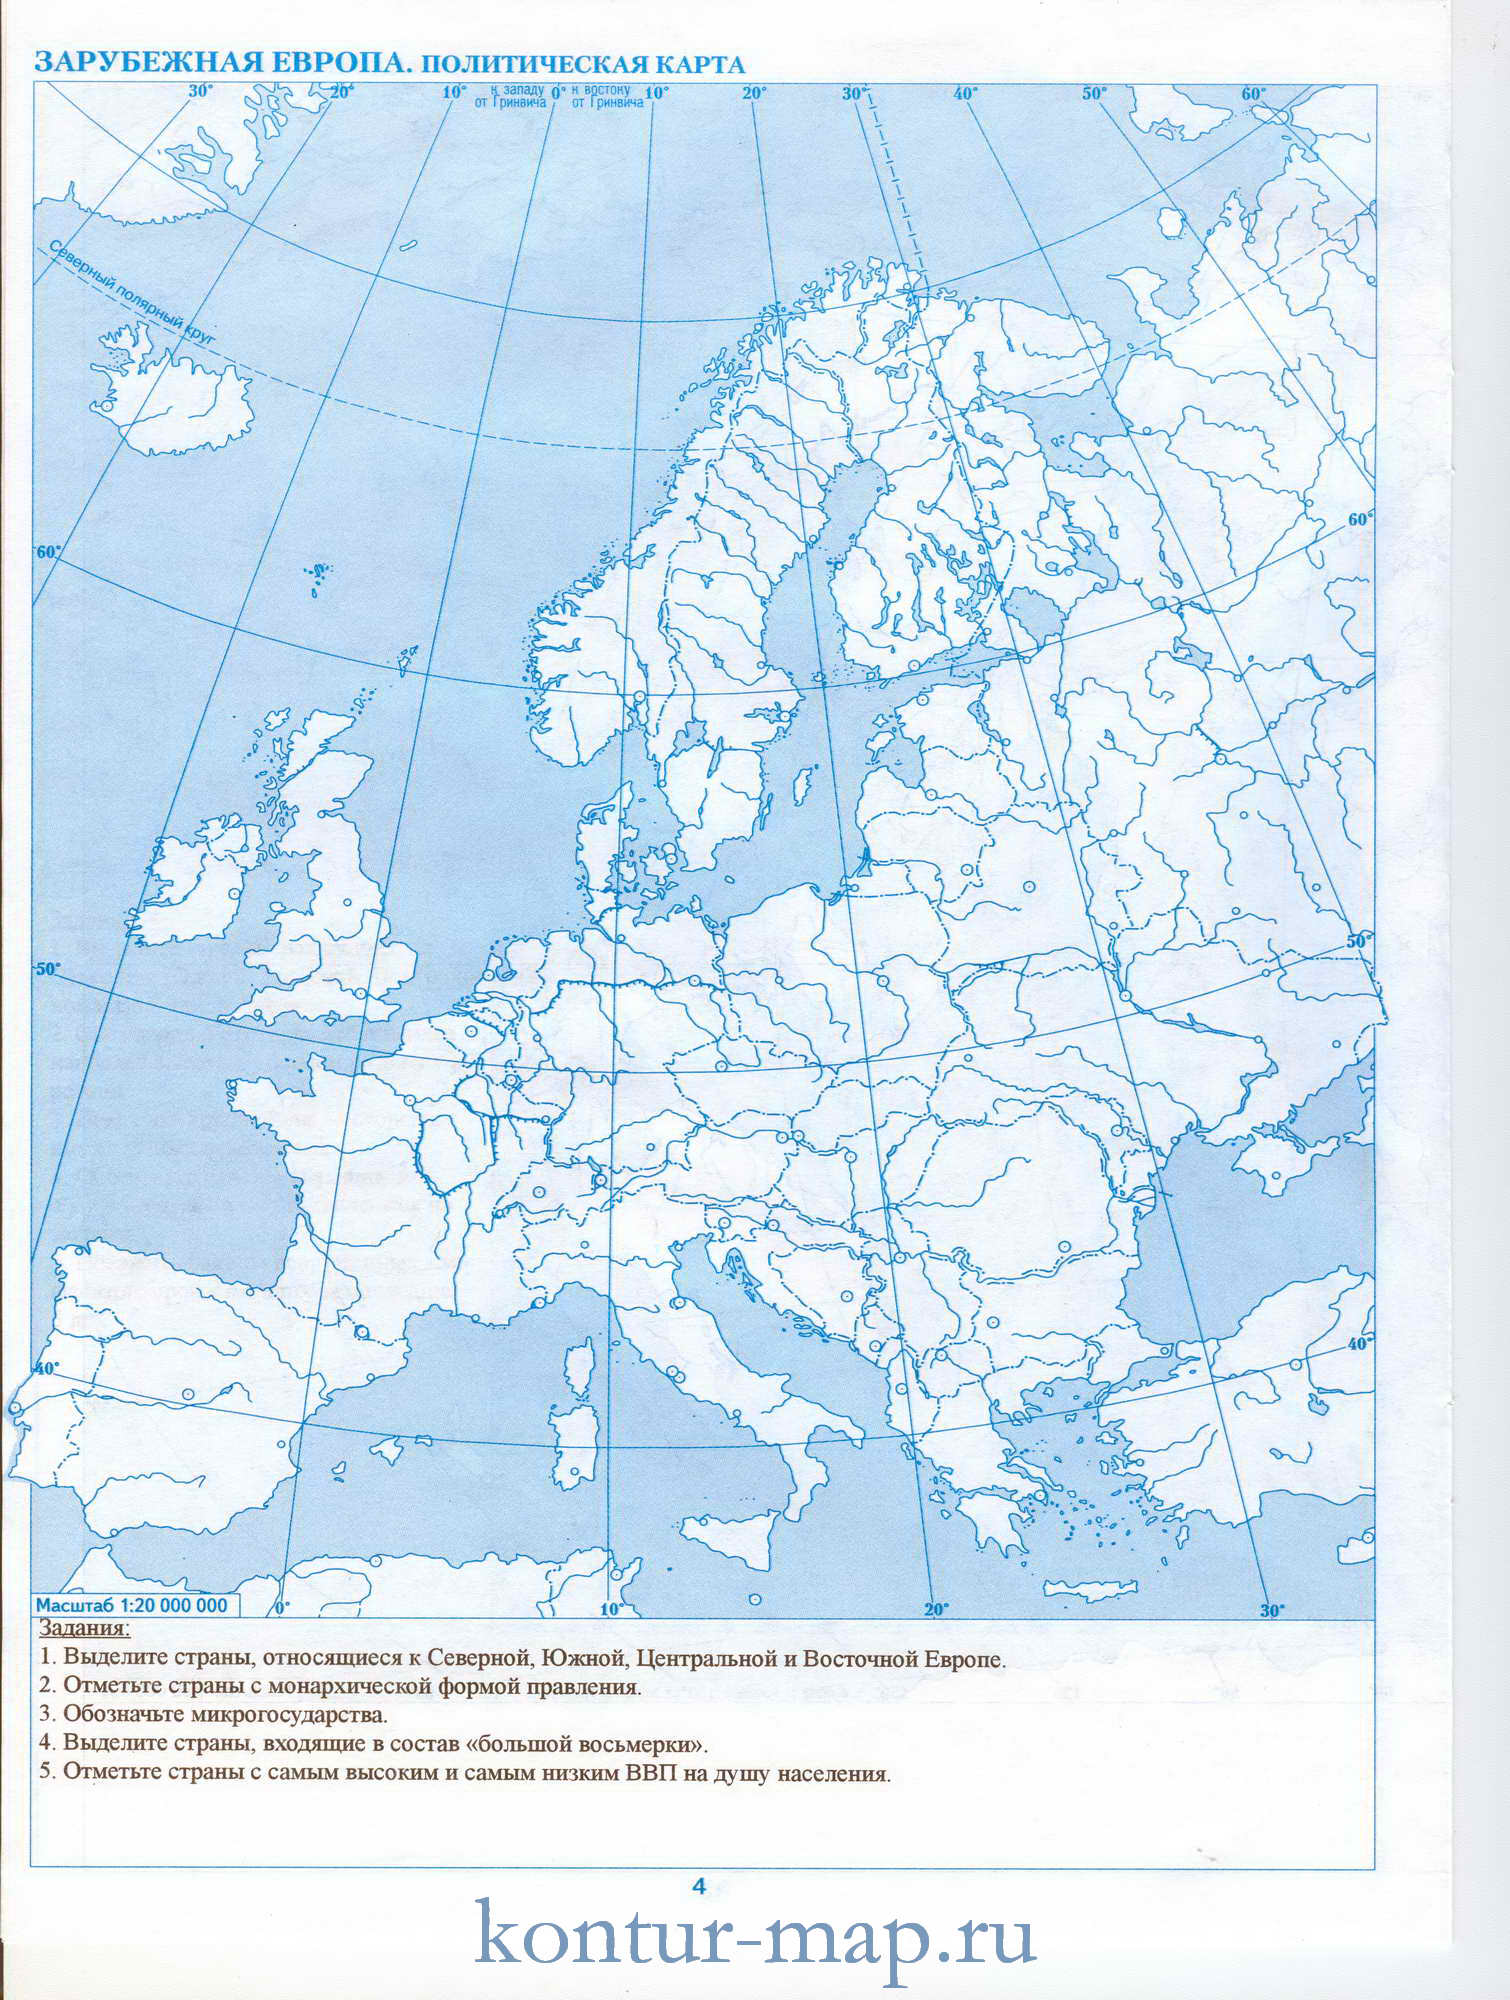 Контрольная работа по географии 11 класс по европе и азии